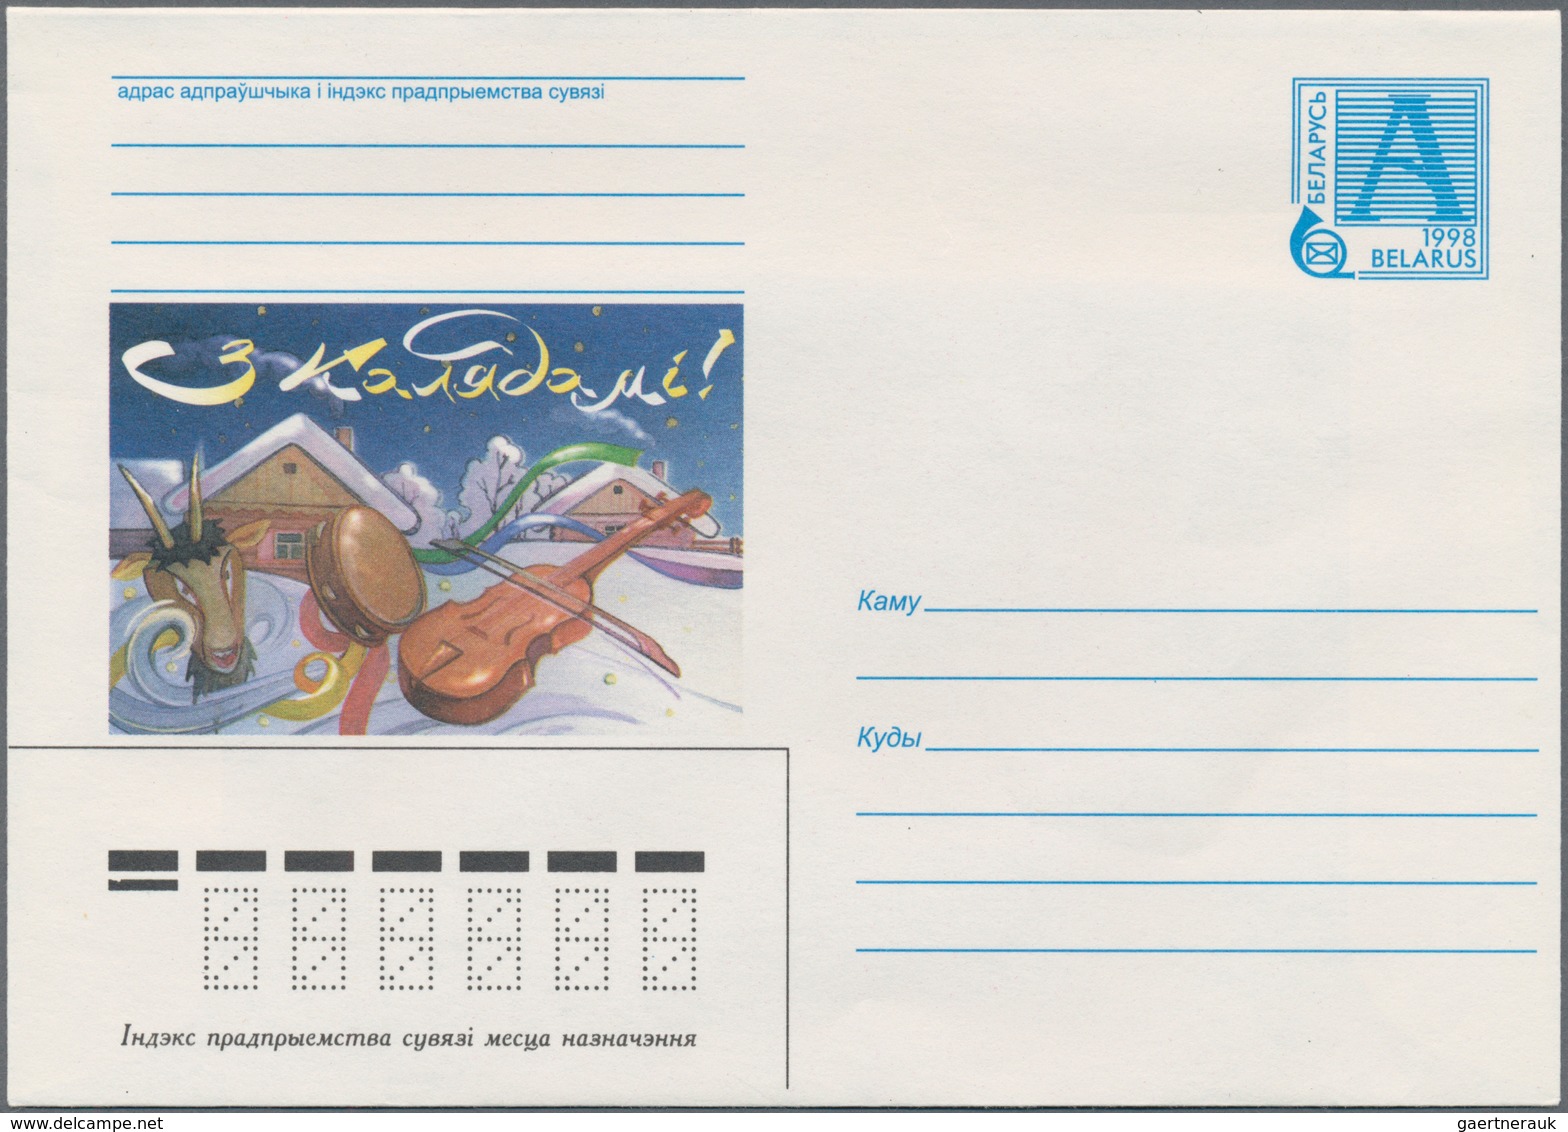 Weißrussland (Belarus): 1998/2001 Ca. 1.050 Unused Postal Stationery Envelopes, Mostly Picture Envel - Belarus